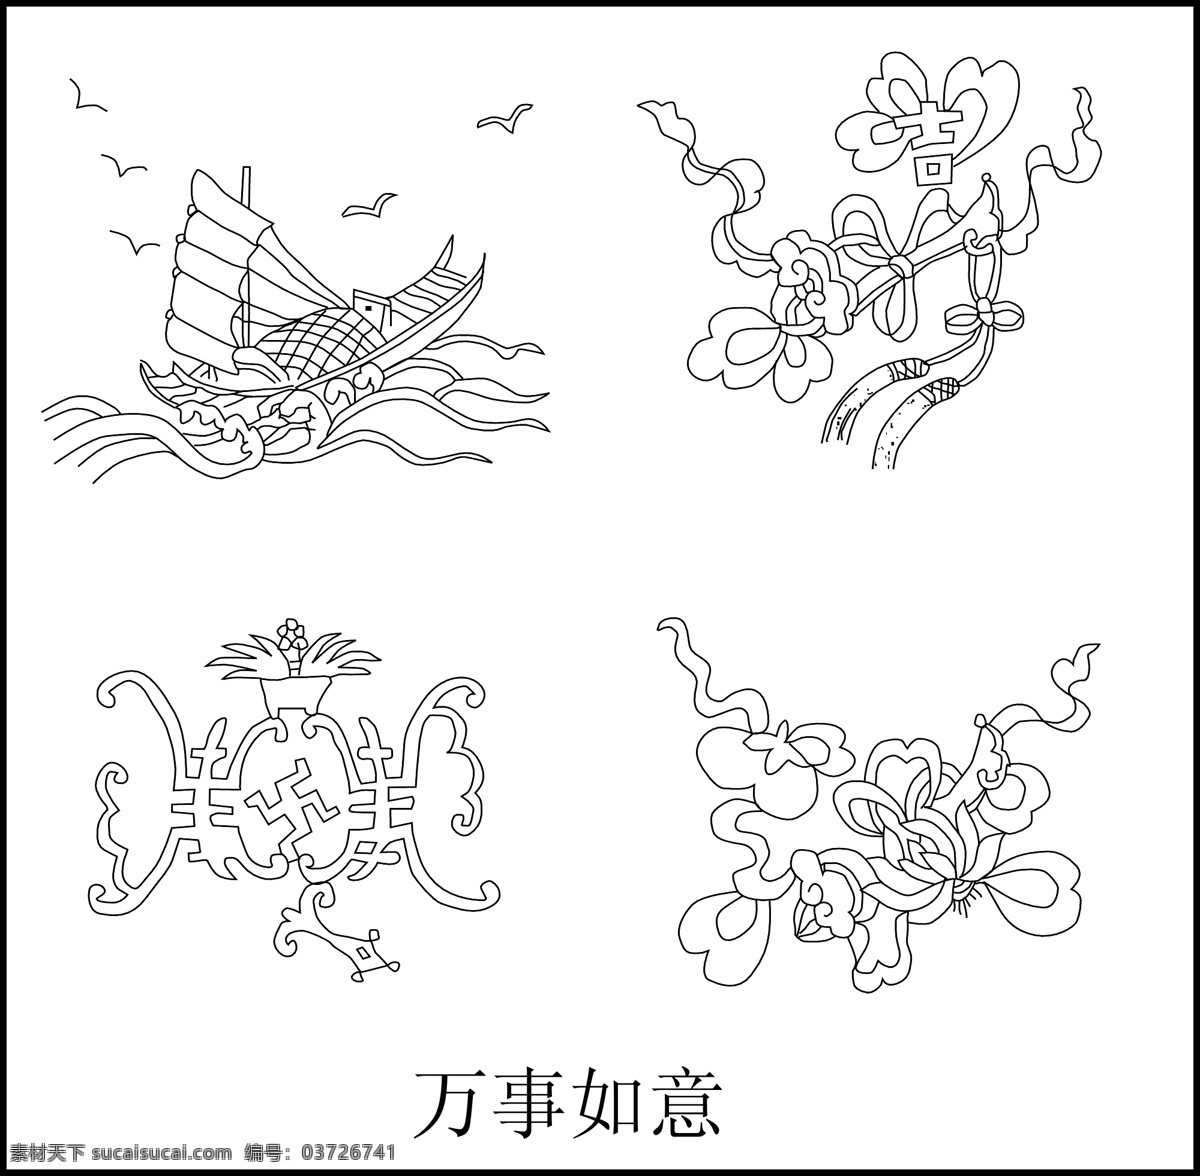 万事如意 中国元素 中国古代素材 一帆风顺 吉祥如意 船 如意 双喜 传统文化 文化艺术 矢量